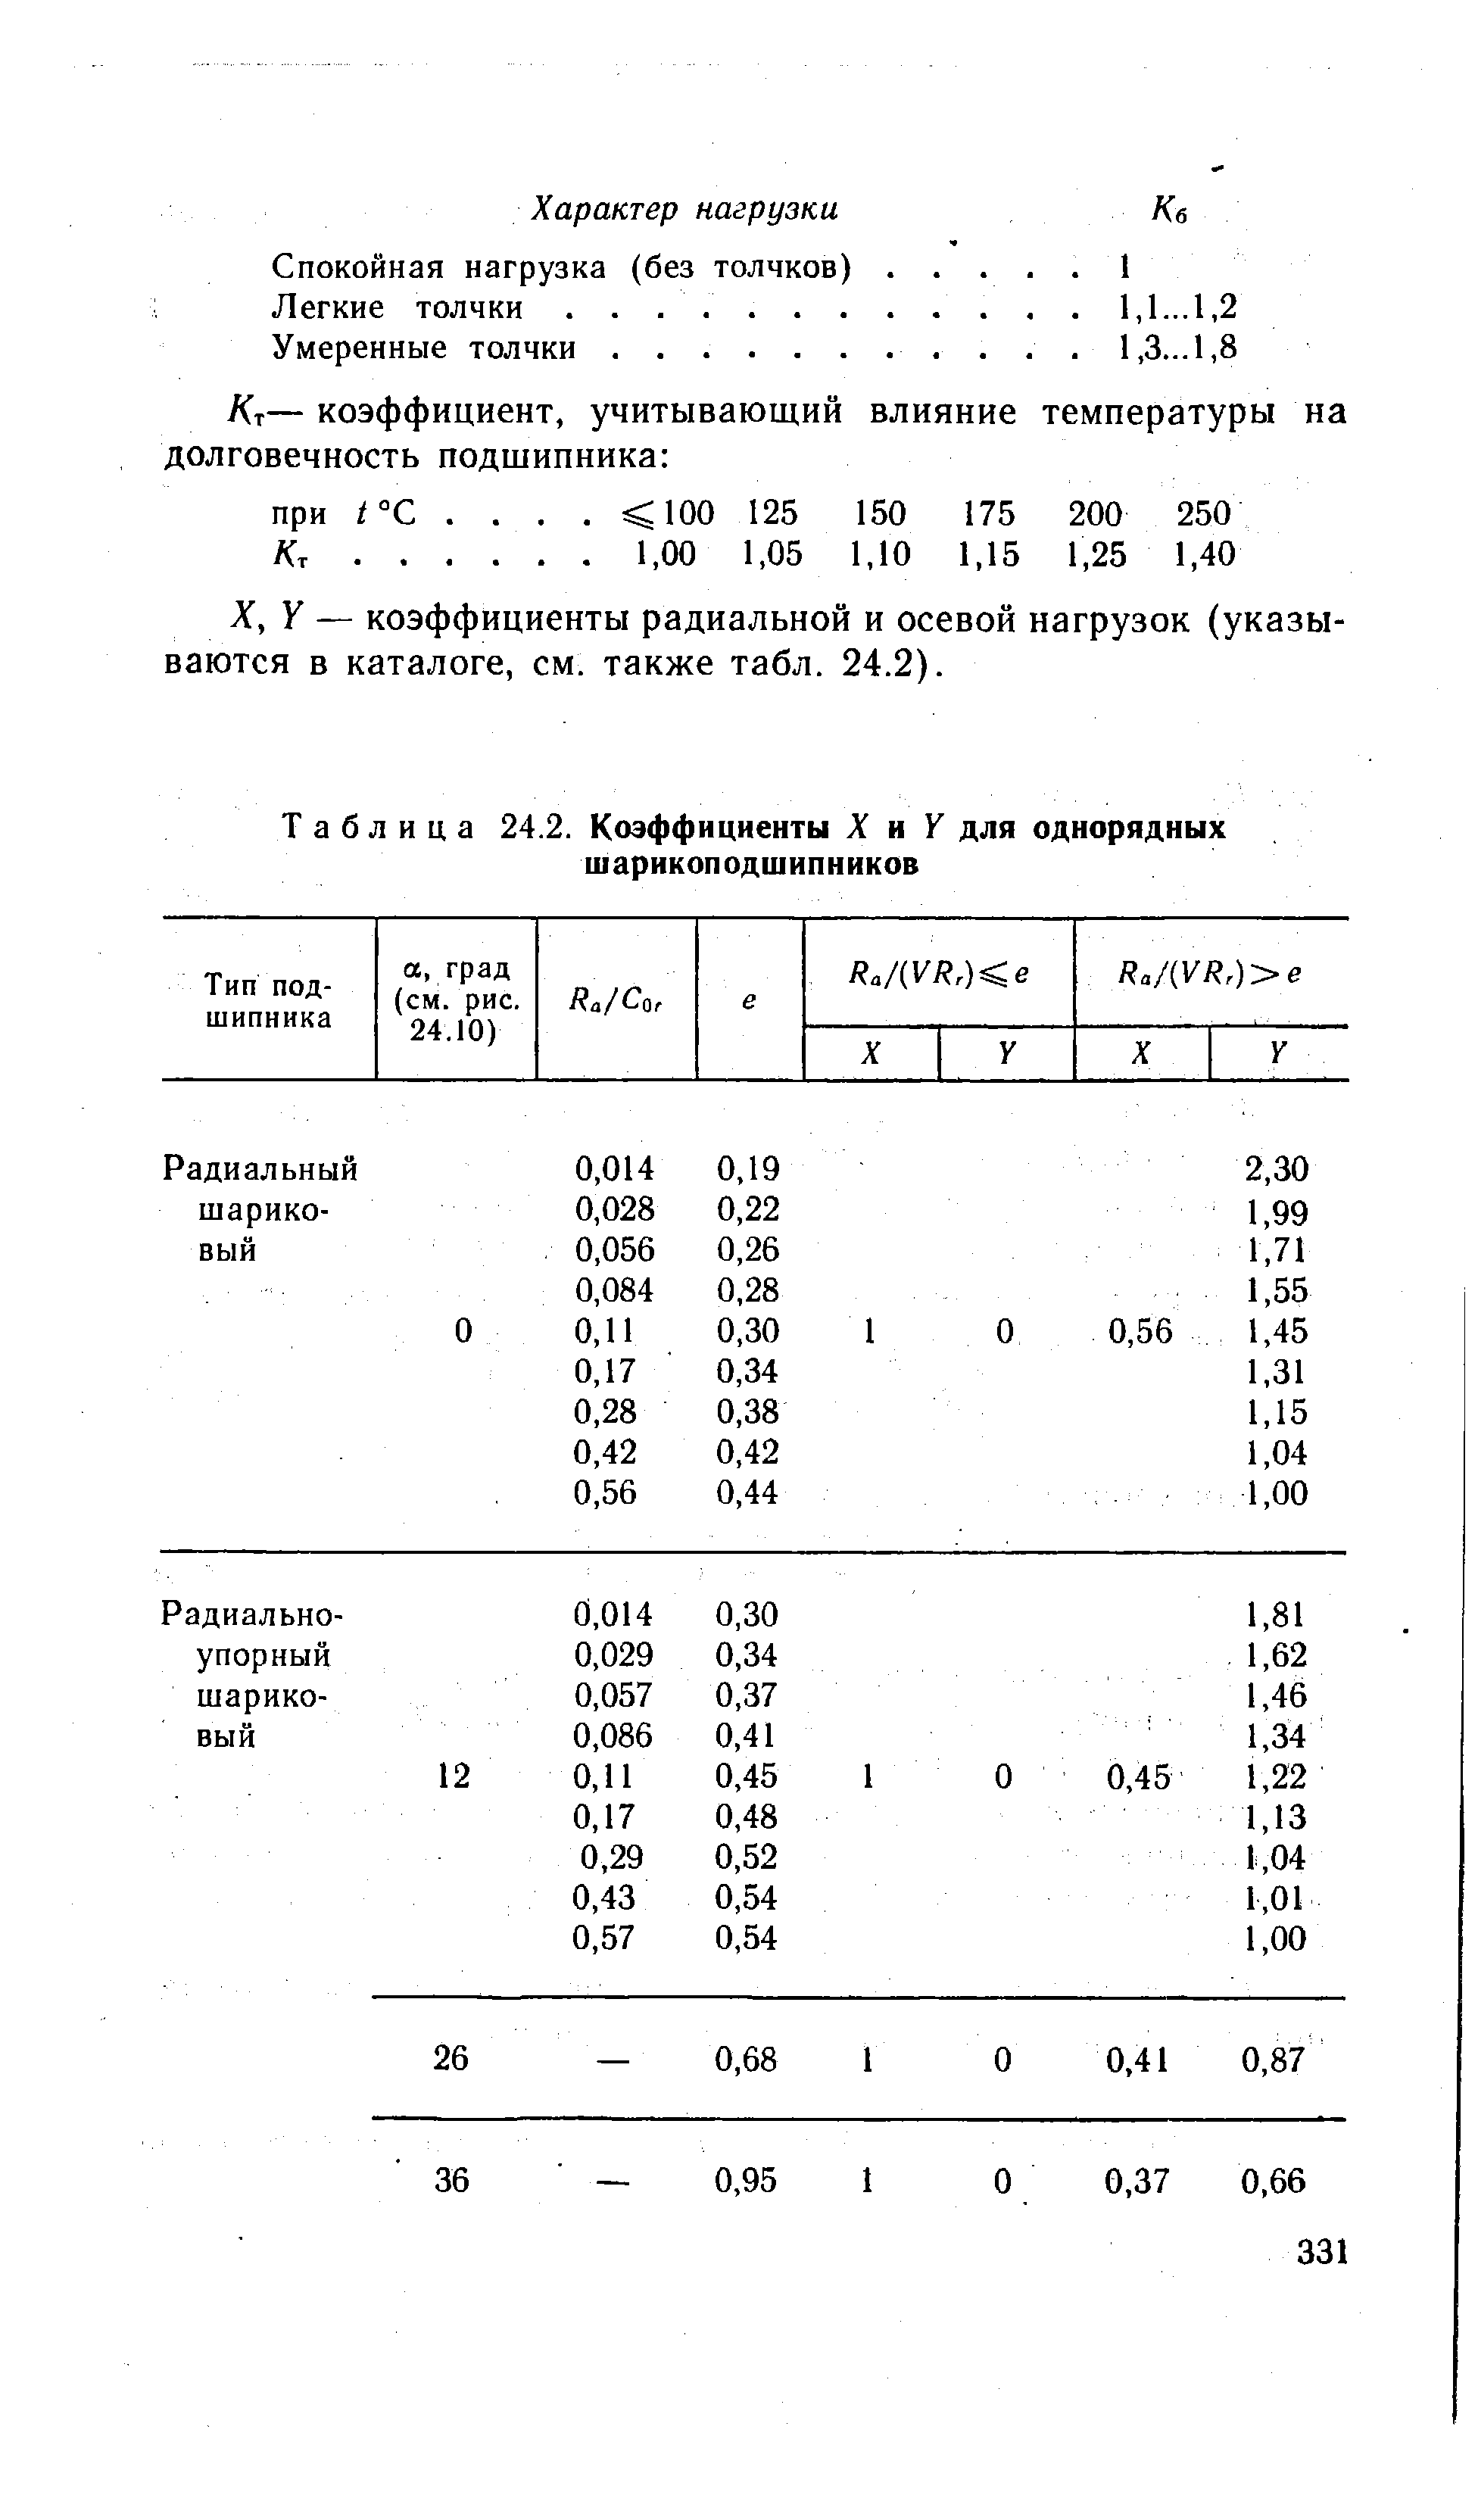 Таблица 24.2. Коэффициенты X и Y для однорядных шарикоподшипников
